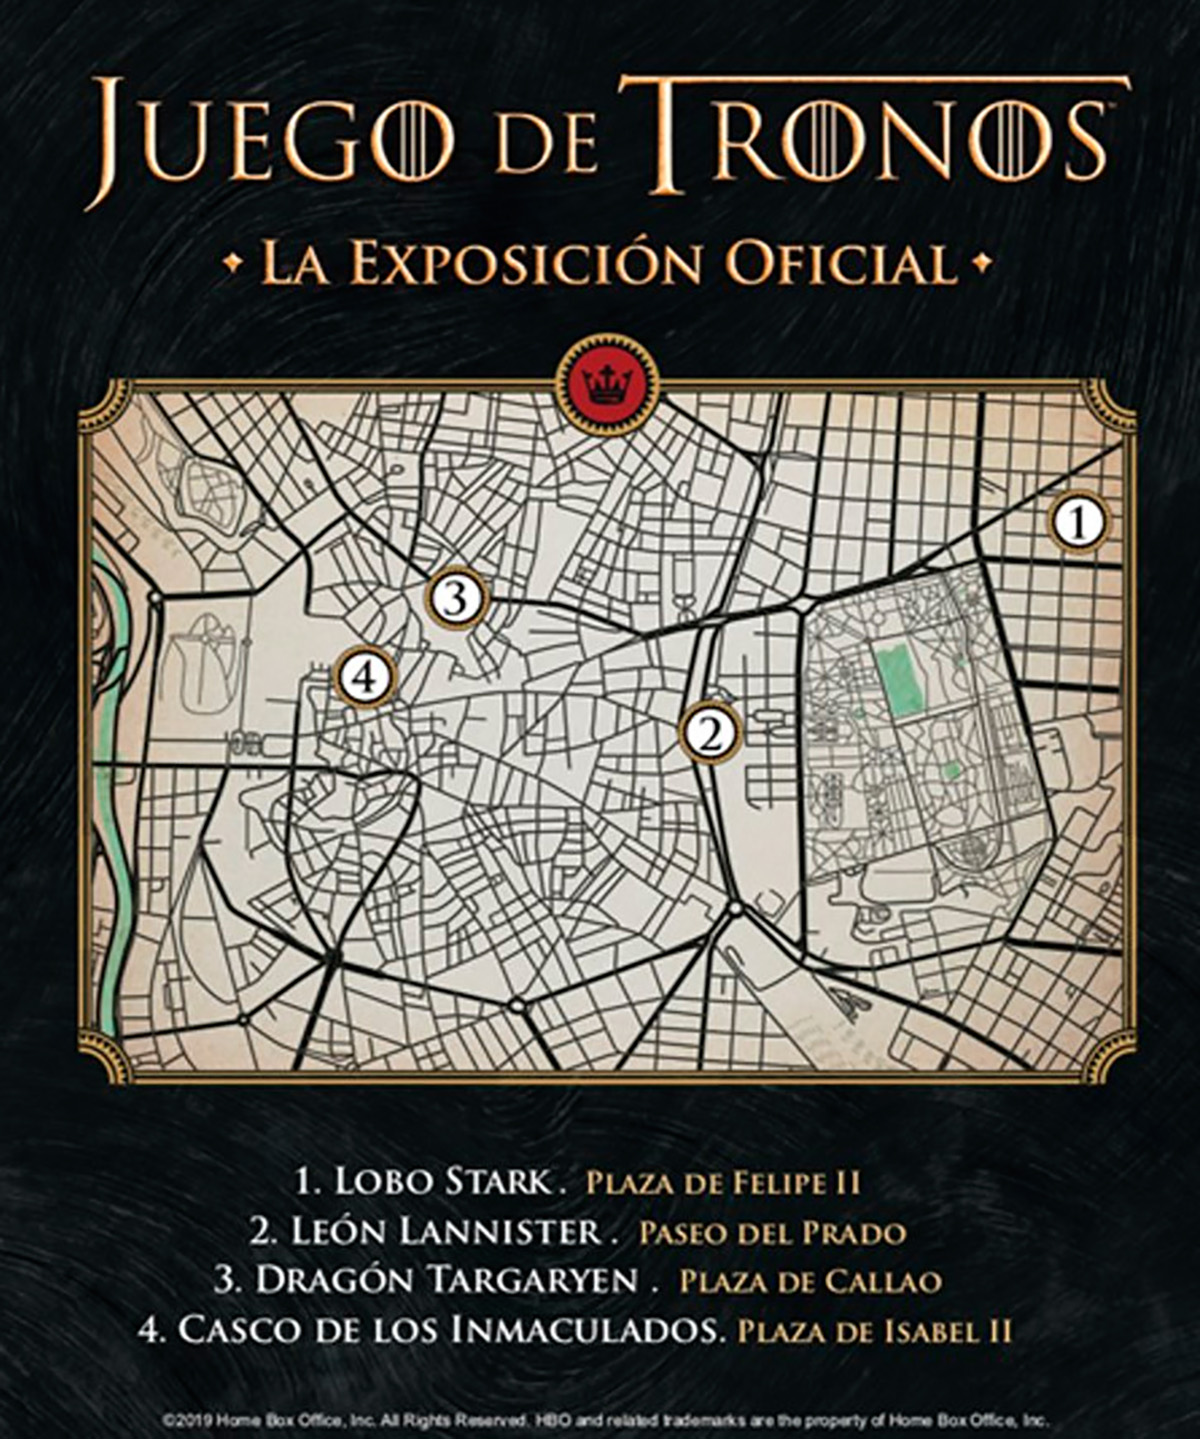 Descubre dónde están las esculturas de ‘Juego de Tronos’ por Madrid